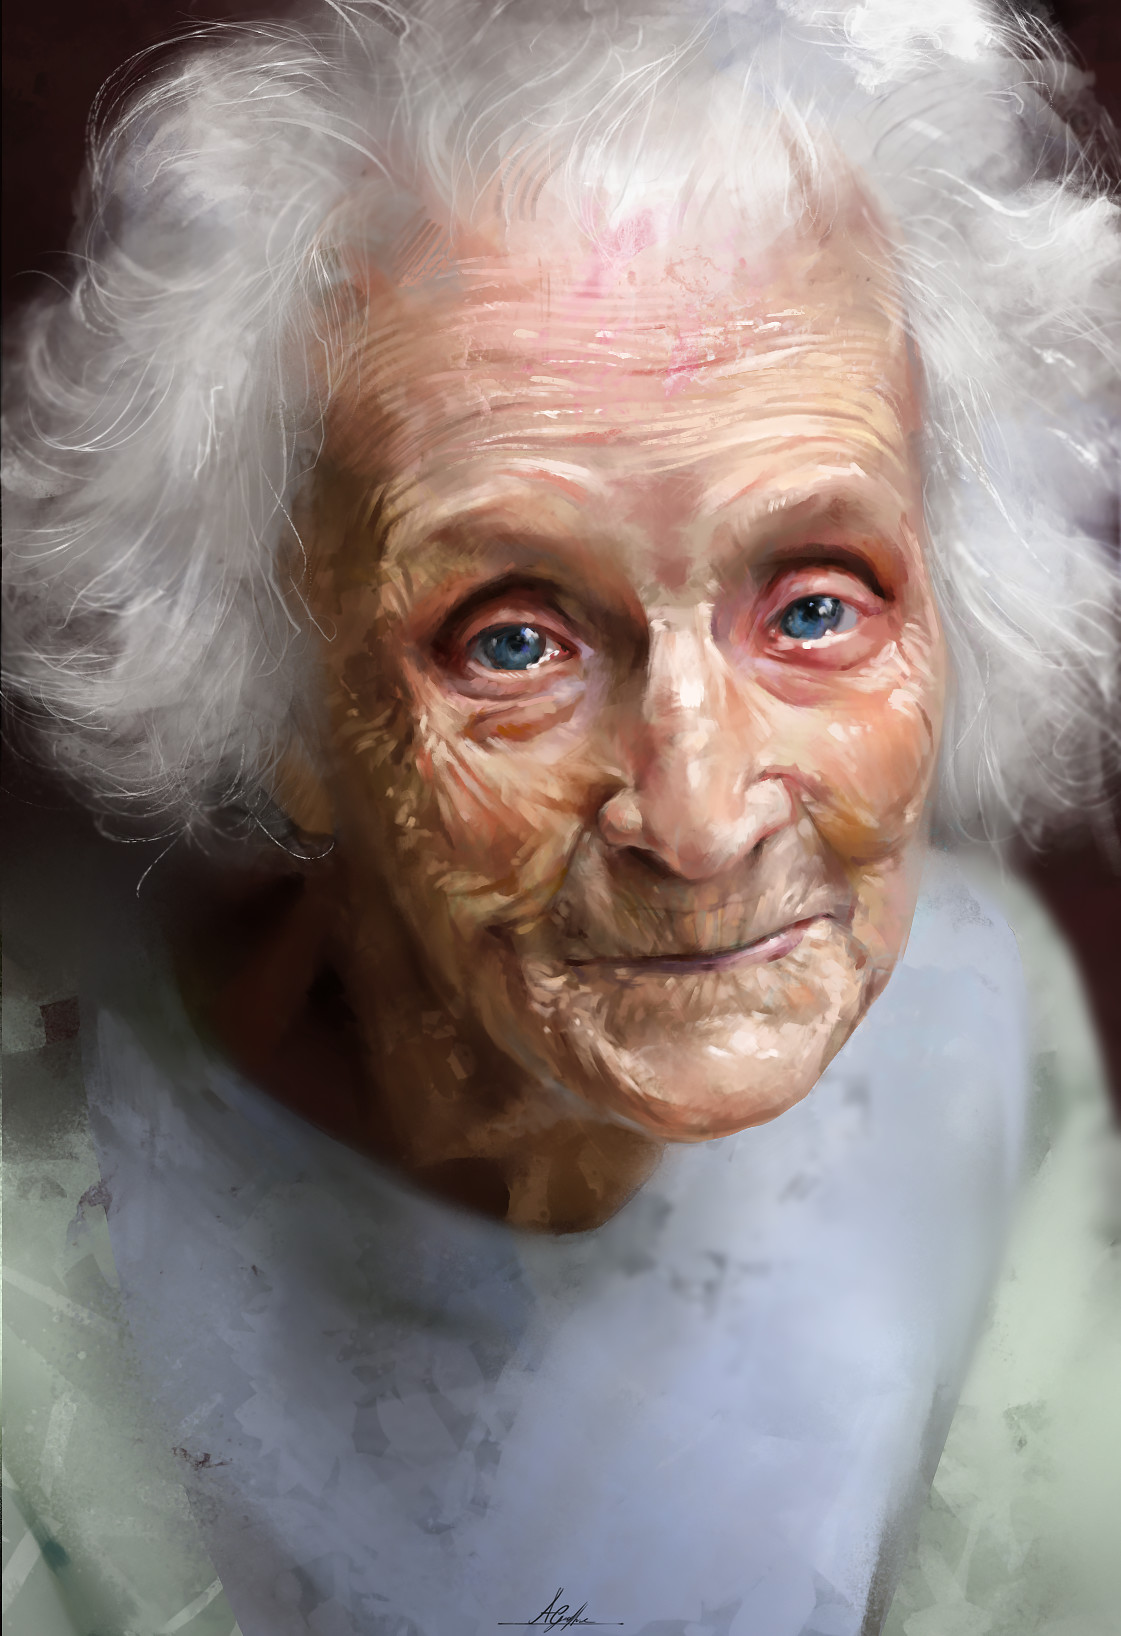 ArtStation - Portrait Study of an Older Woman